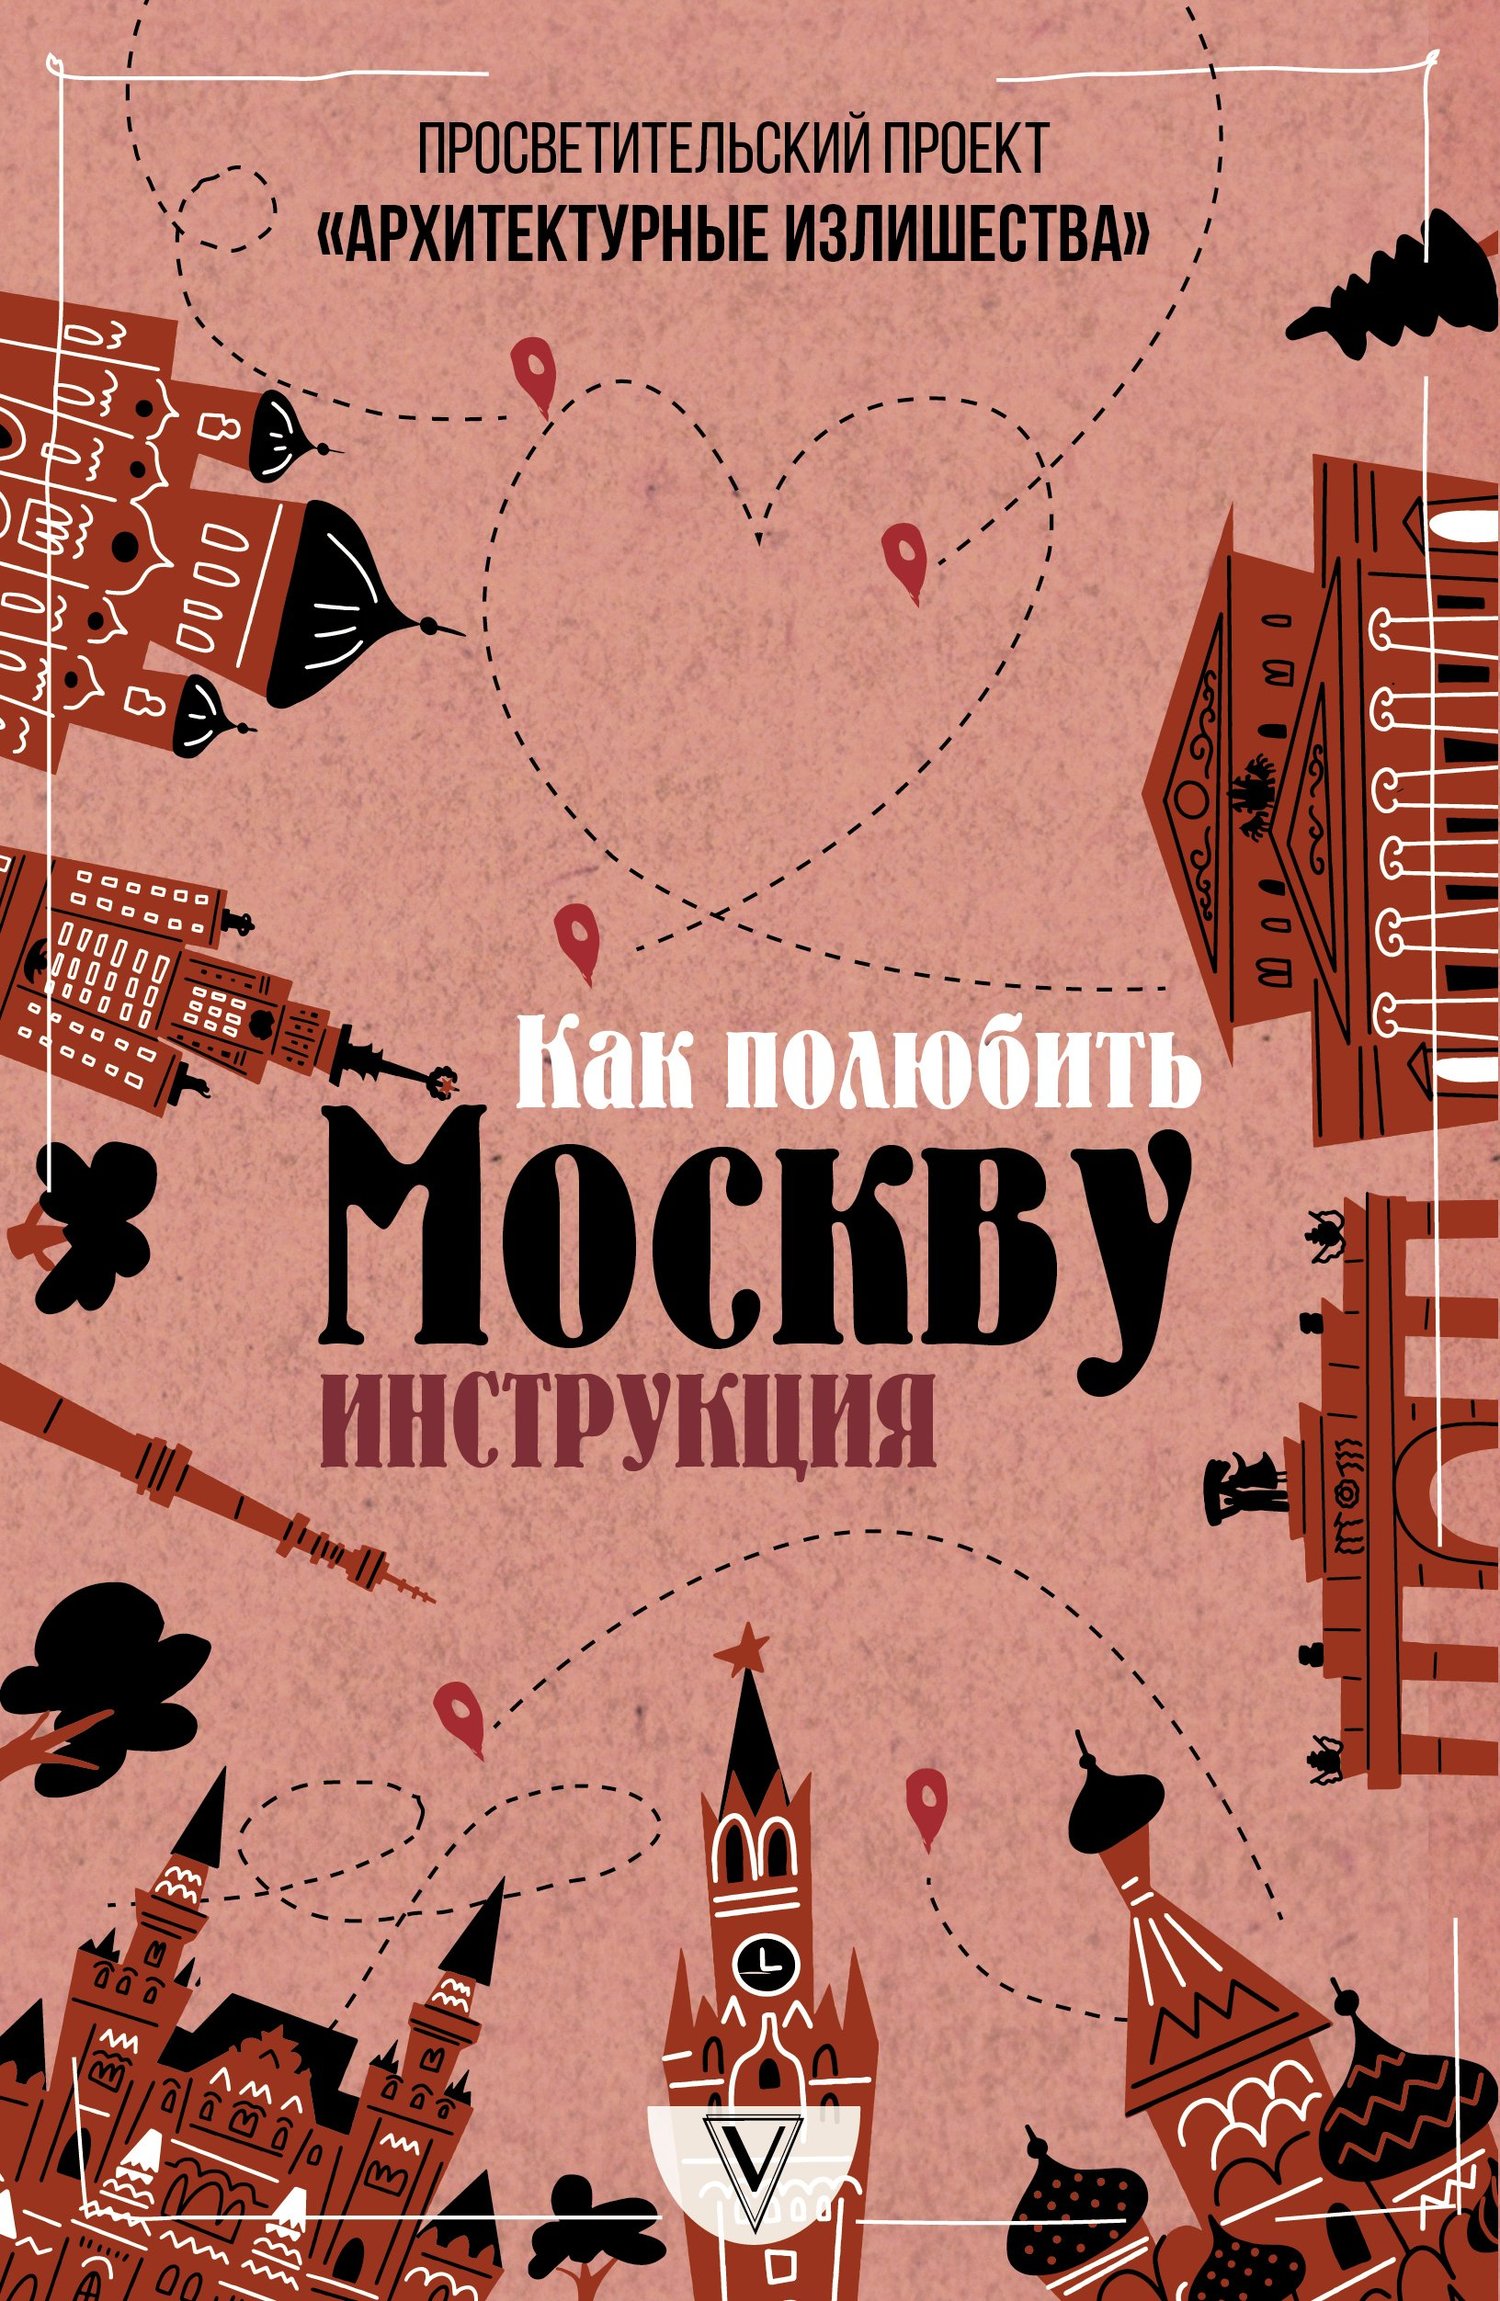 Архитектурные излишества: как полюбить Москву. Инструкция - Павел Александрович Гнилорыбов